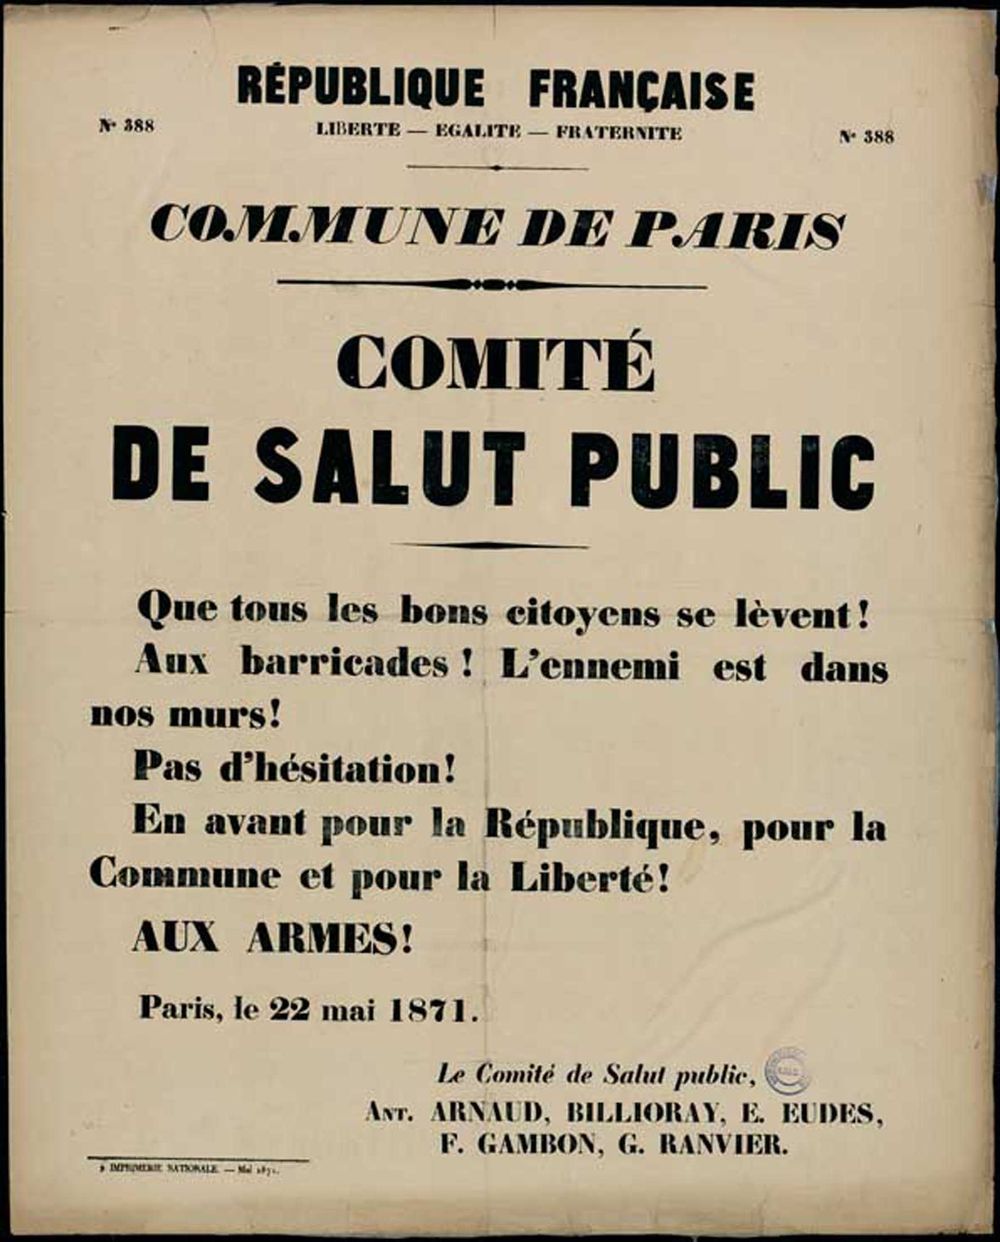 Affiche de la Commune de Paris N° 388 du 22 mai 1871 - Appel au combat (source : La Contemporaine – Nanterre / argonnaute.parisnanterre.fr)